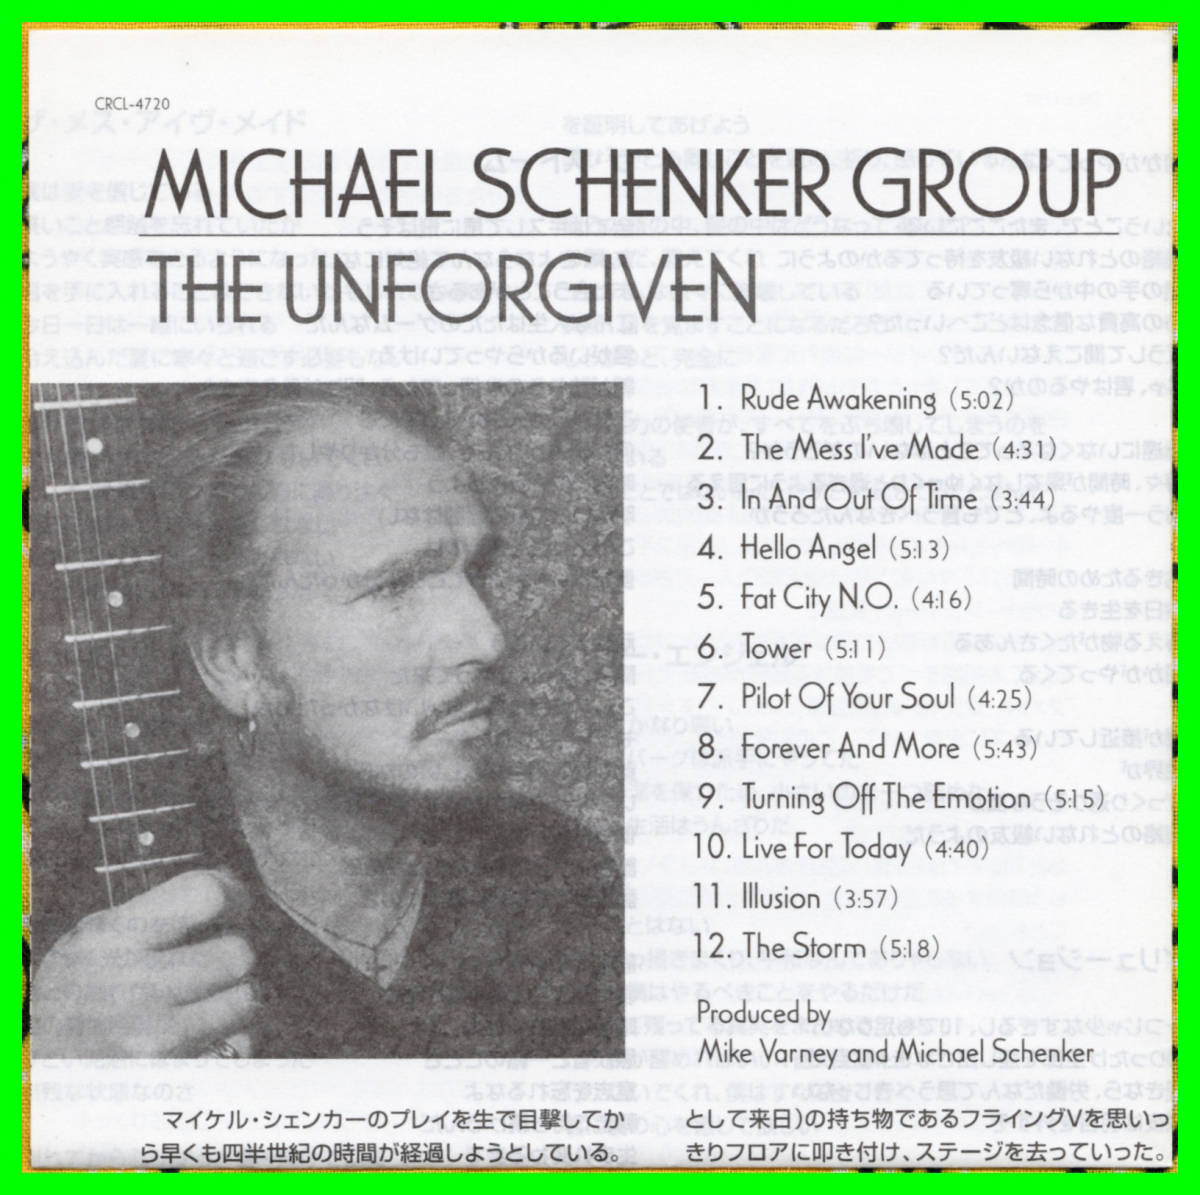 ♪廃盤≪国内盤帯付CD≫MICHAEL SCHENKER GROUP(マイケル・シェンカー・グループ/M.S.G)/The Unforgiven♪UFO♪McAULEY SCHENKER GROUP♪_解説書